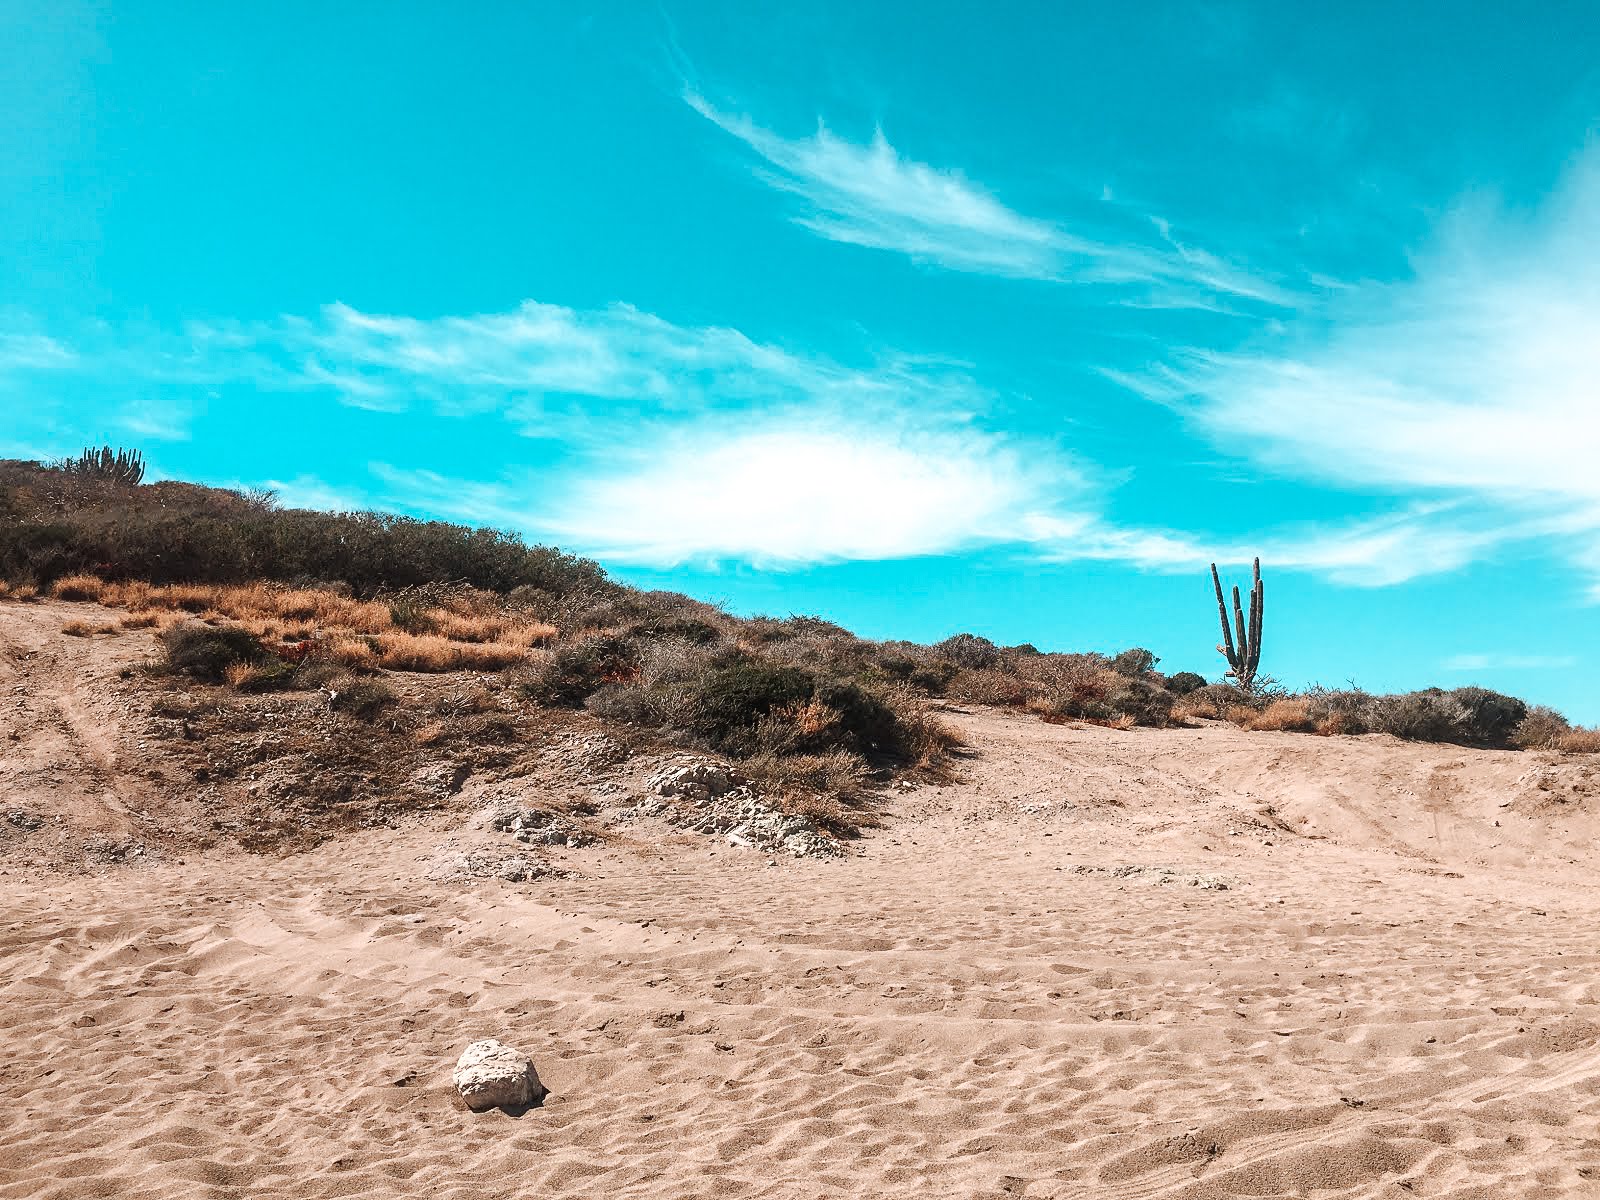 la playa piedras pintas à san carlos dans le nord ouest du mexique avec ses dunes de sable et ses cactus